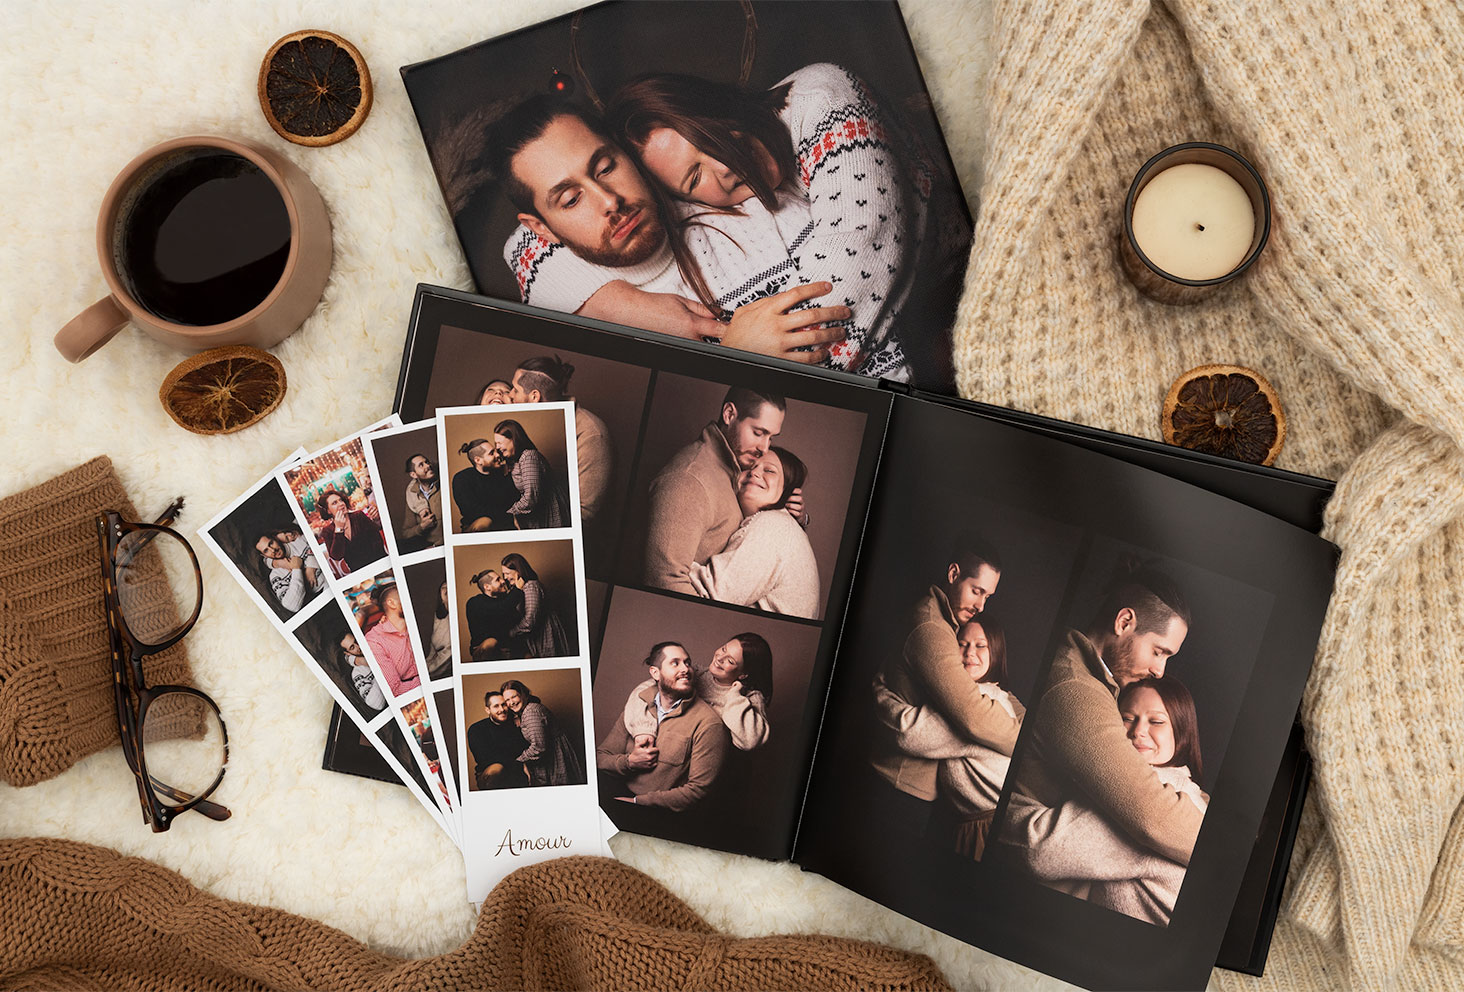 Plusieurs cadeaux photo personnalisés posés sur un lit dans une ambiance cozy avec un café et une bougie